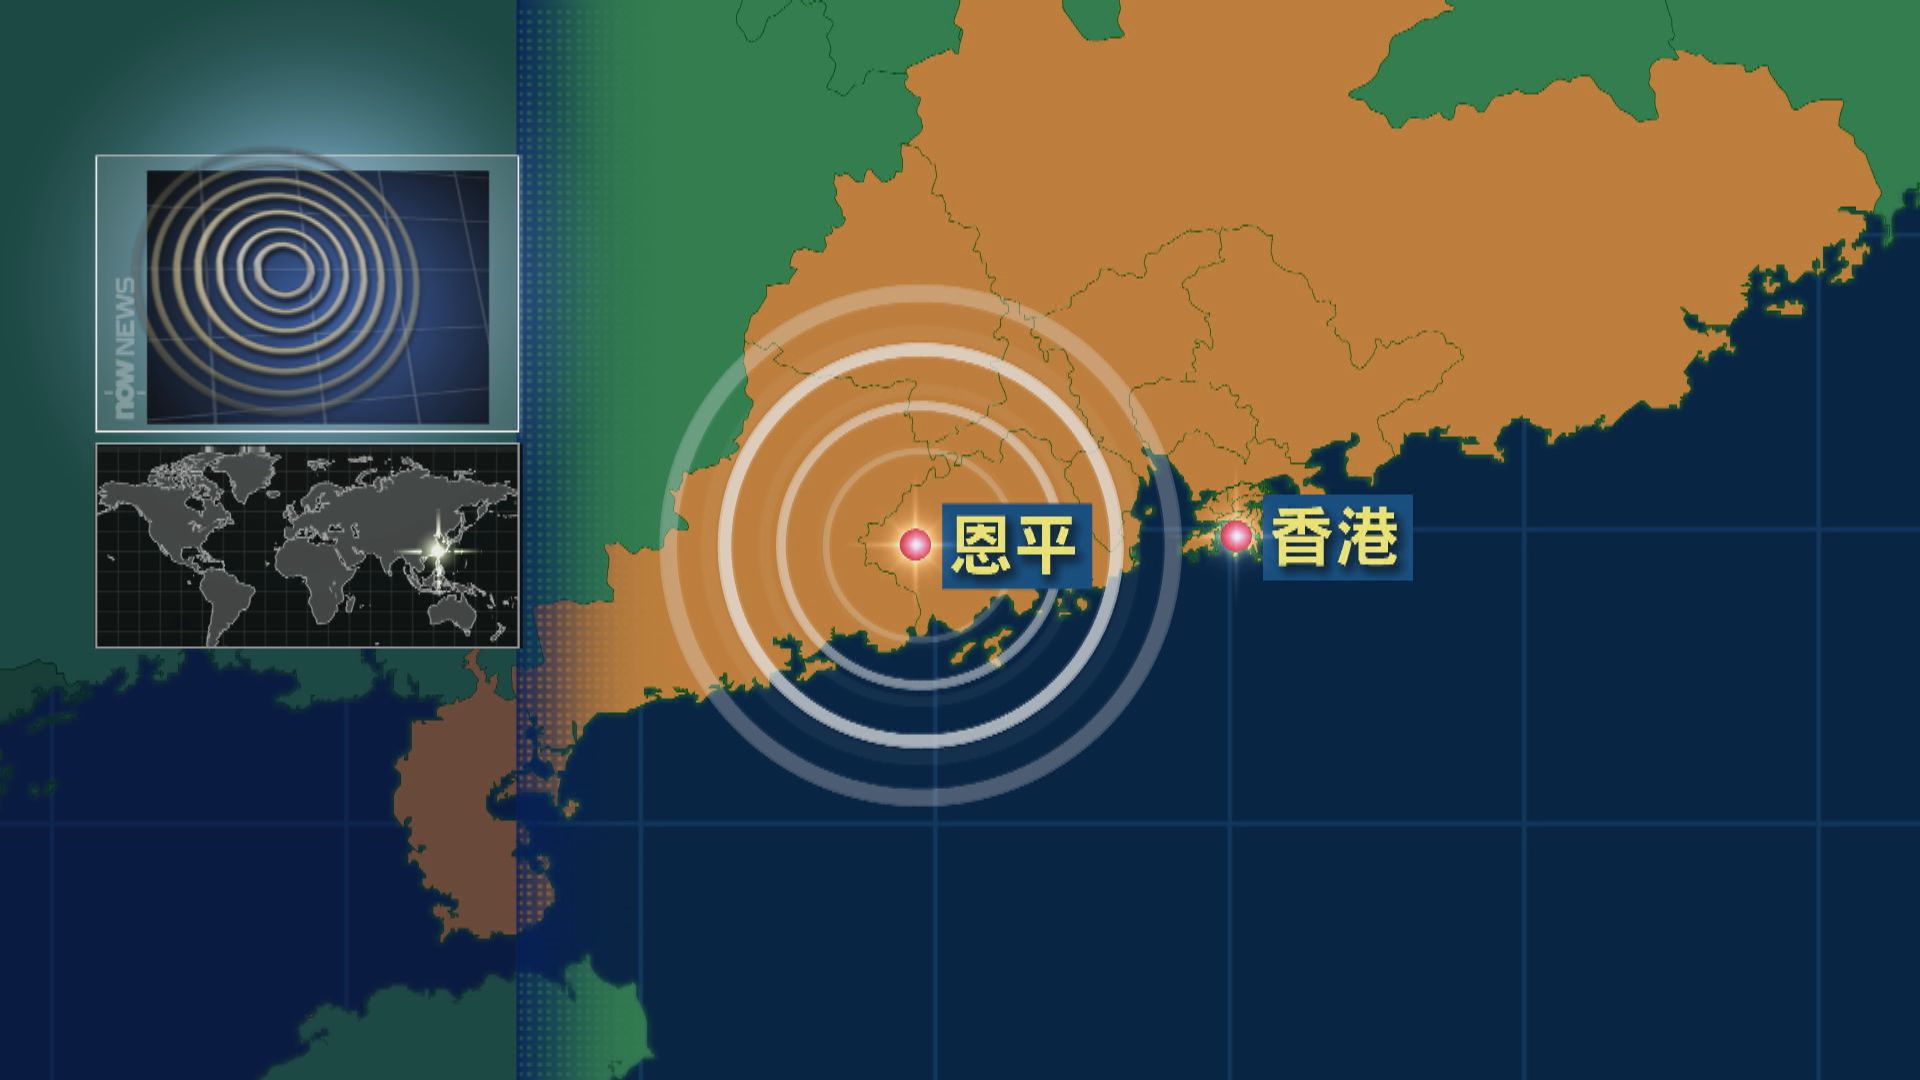 廣東恩平4.3級地震 港天文台接逾百名市民報告